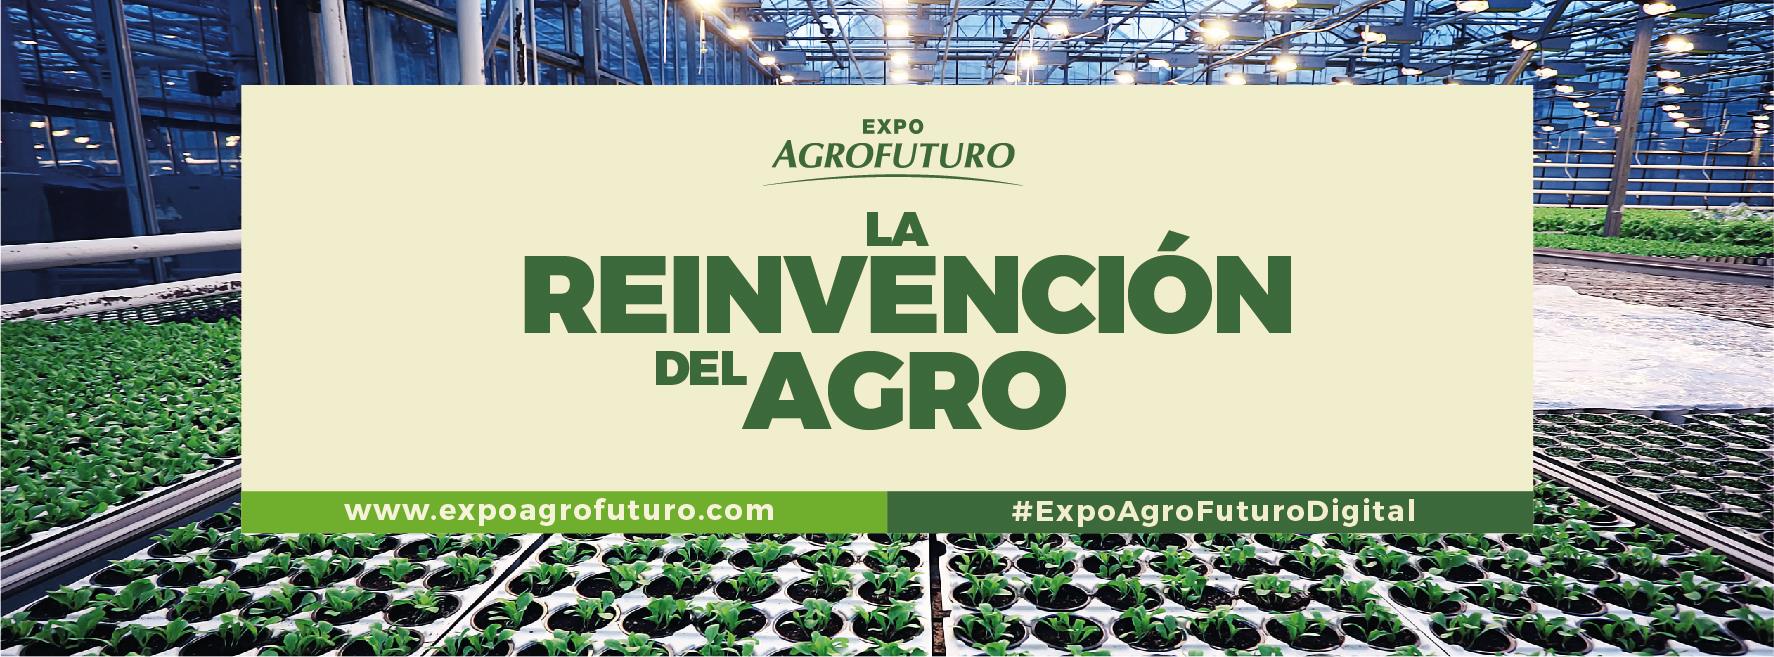 Think Plastic Brazil coordena participação  de 14 empresas na Expo Agrofuturo 2020 Digital